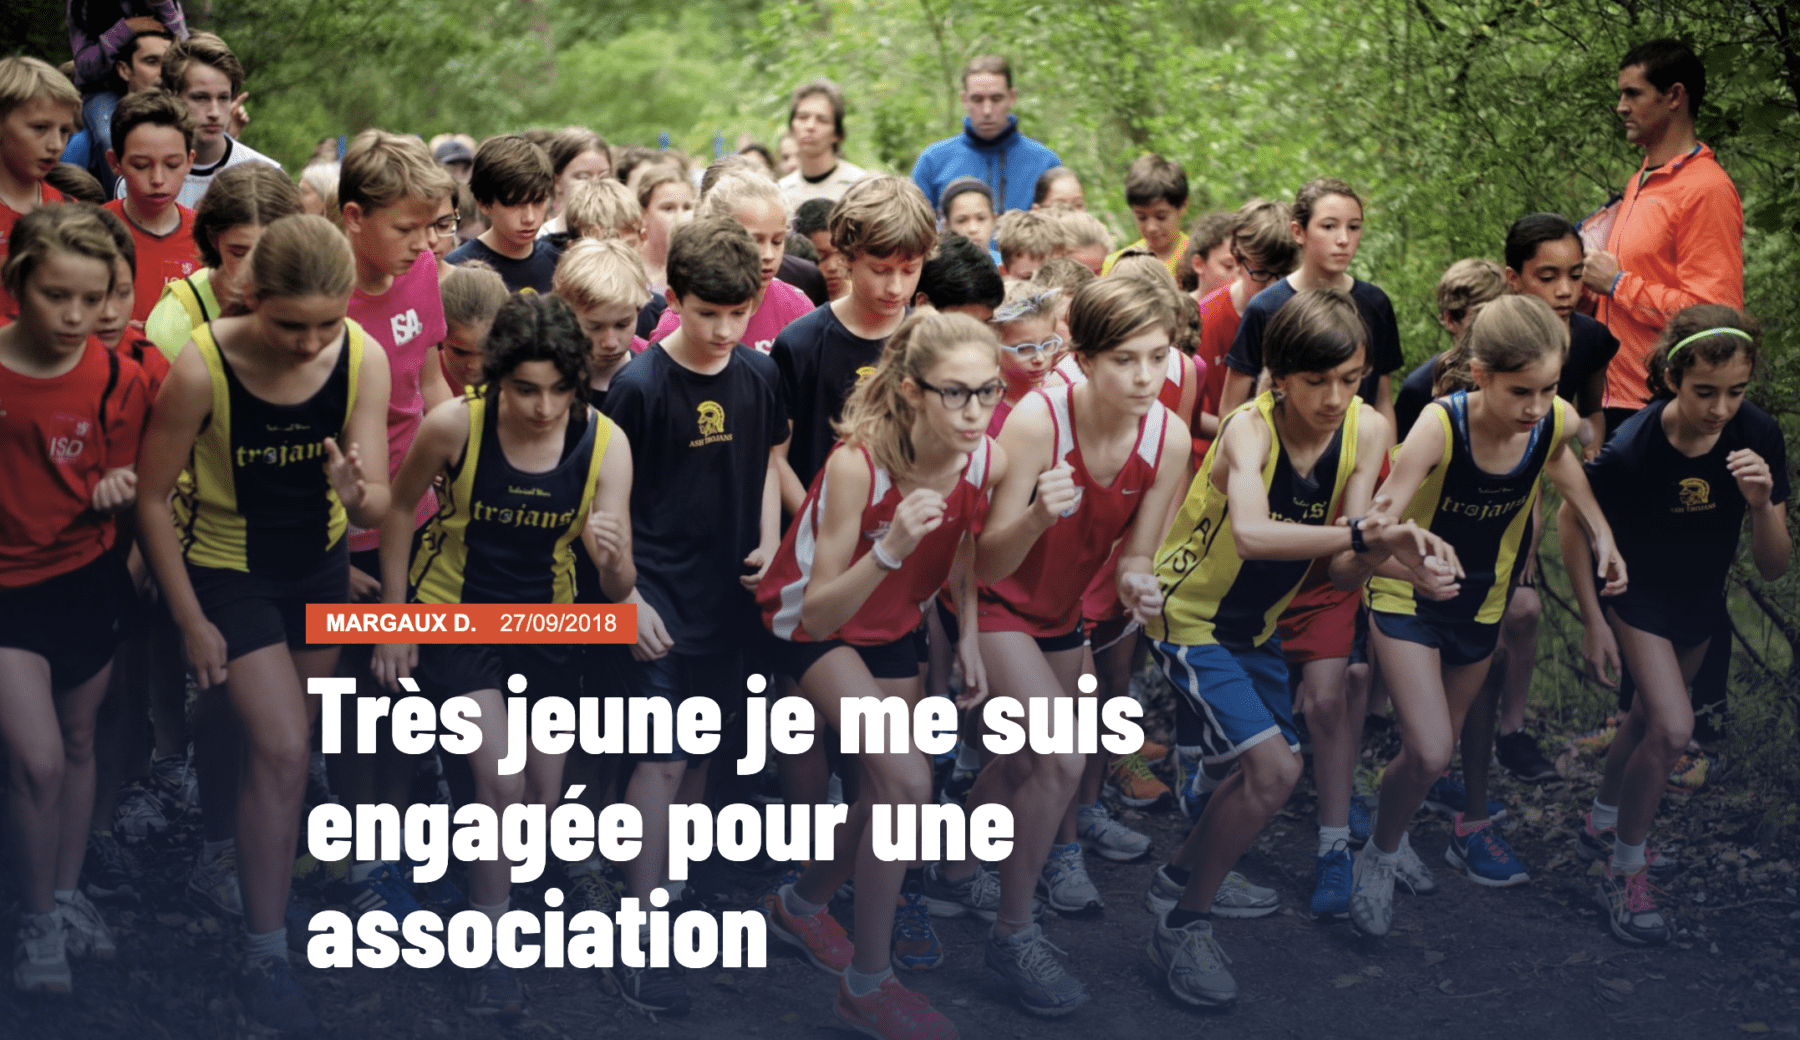 Capture d'écran de l'article "Très jeune je me suis engagée pour une association", illustré par une photo sur laquelle on voit des jeunes participer à une course caritative dans une forêt.